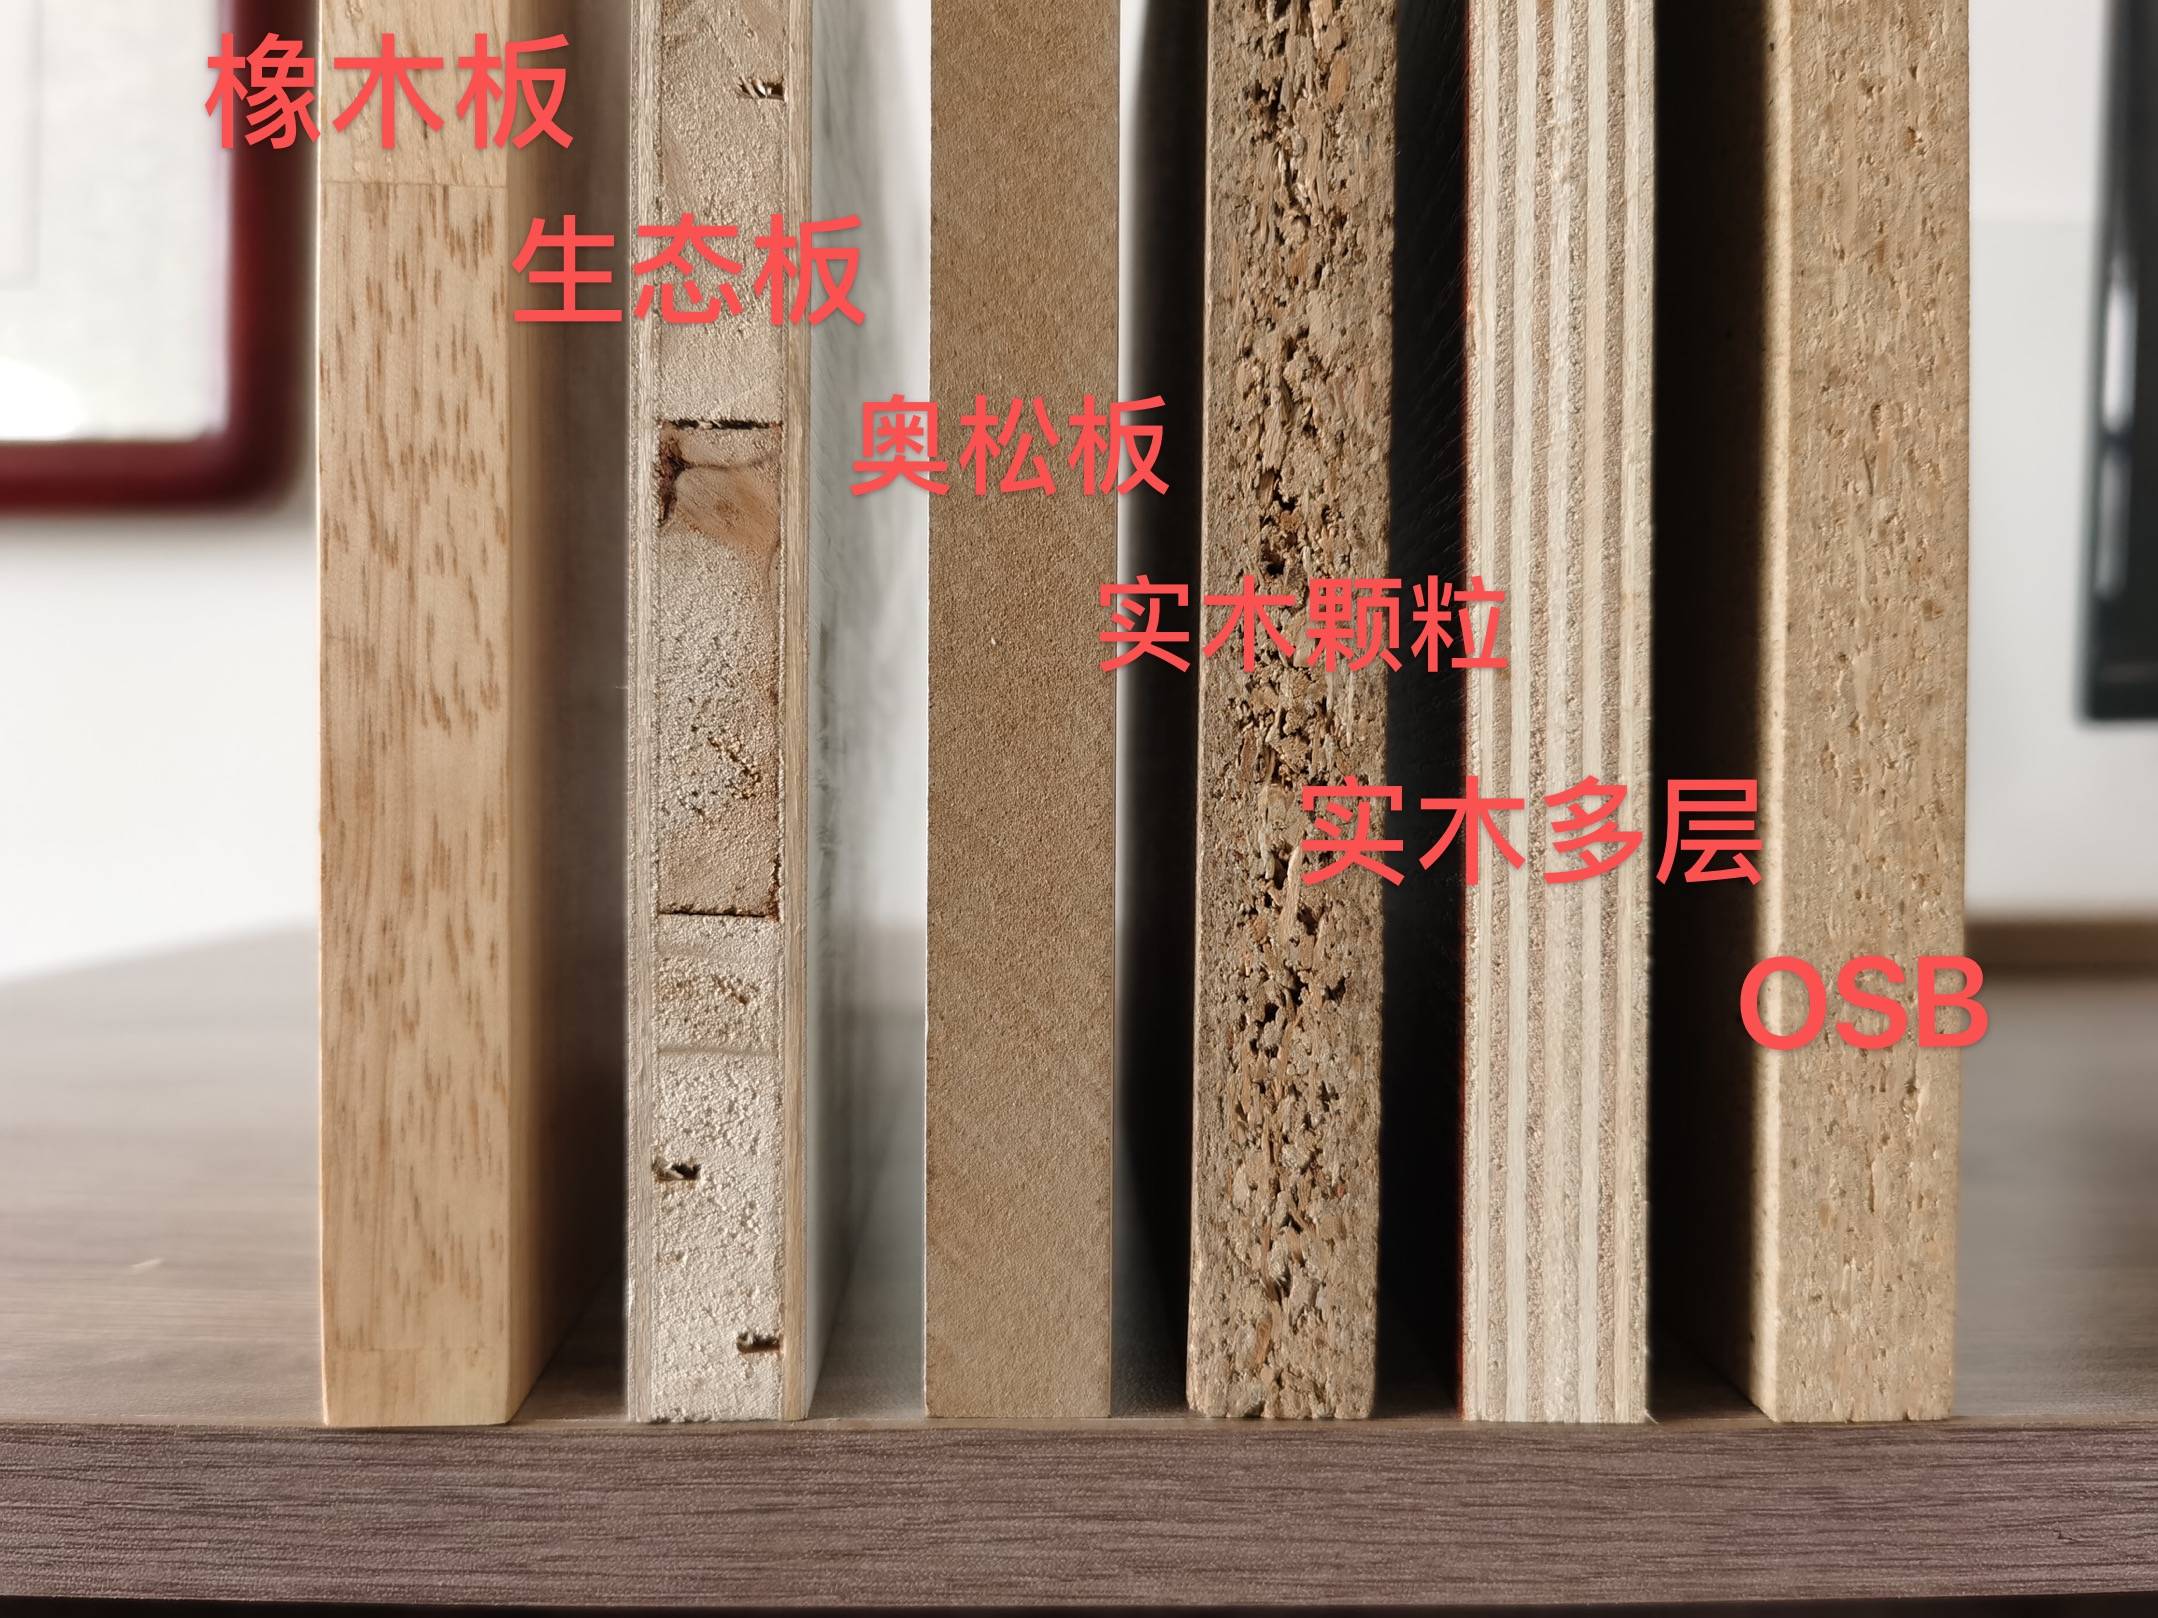 实木颗粒板 多层实木板 Osb板到底哪种材质定制衣柜更环保 克洛斯邦